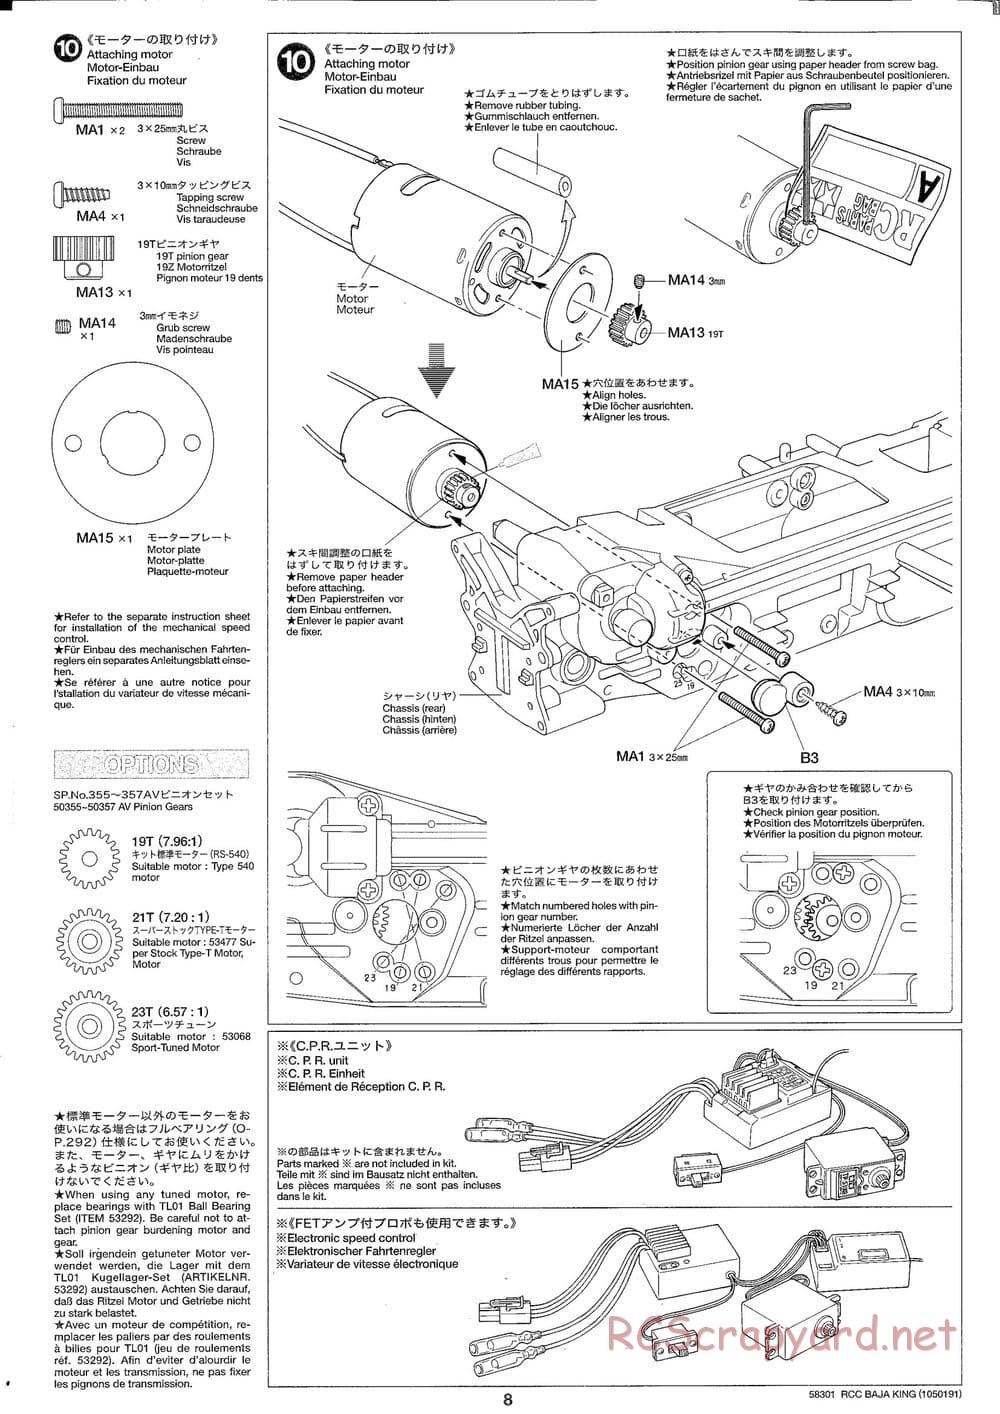 Tamiya - Baja King - TL-01B Chassis - Manual - Page 8